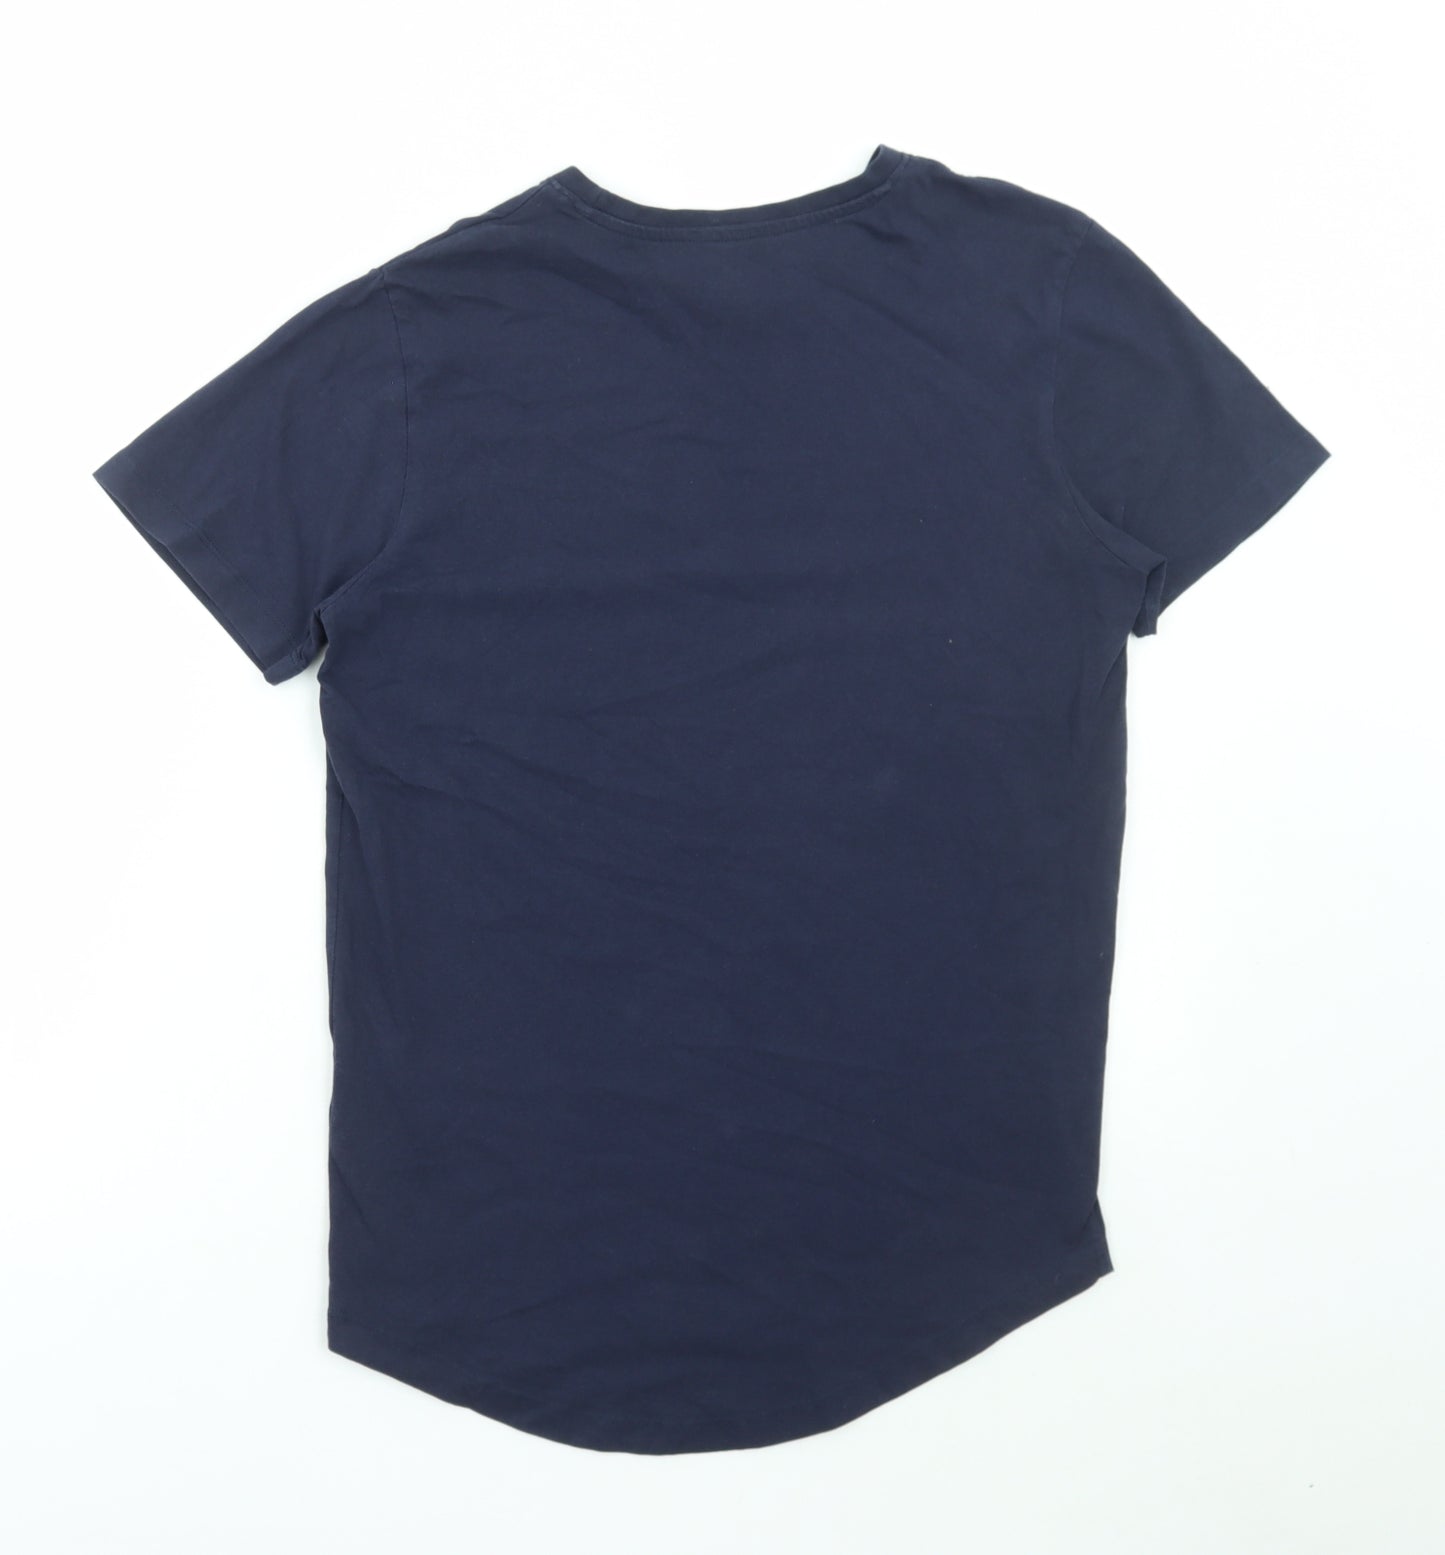 JACK & JONES Mens Blue Cotton T-Shirt Size S Round Neck